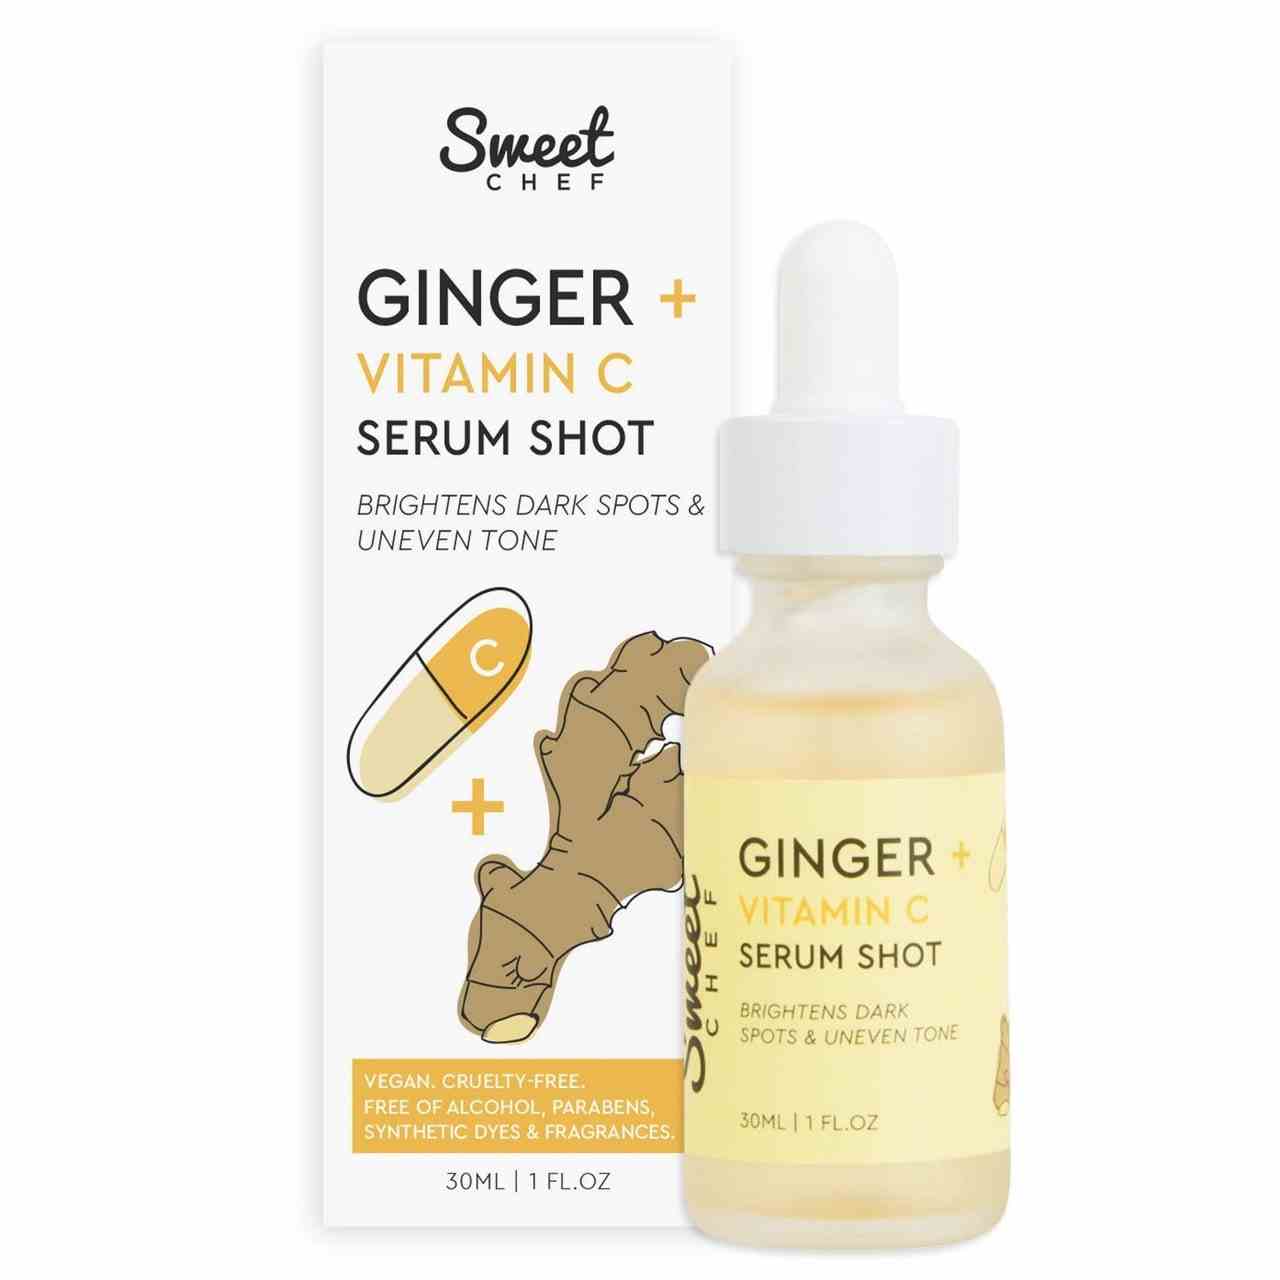 Sweet Chef Ginger + Vitamin C Serum Shot und Box auf weißem Hintergrund